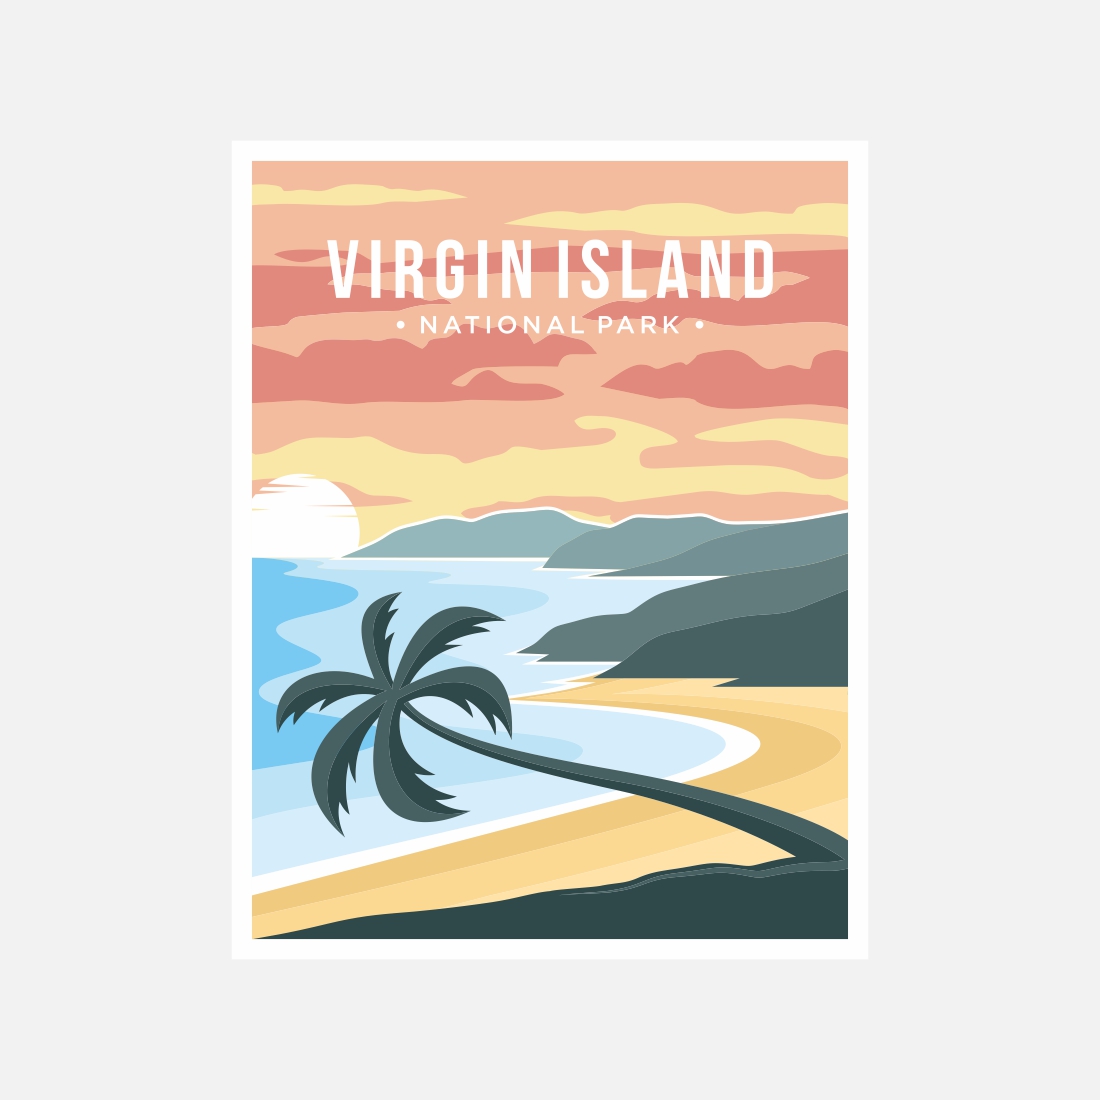 Virgin Islands National Park Poster Vector Illustration Design - Only $11 preview image.